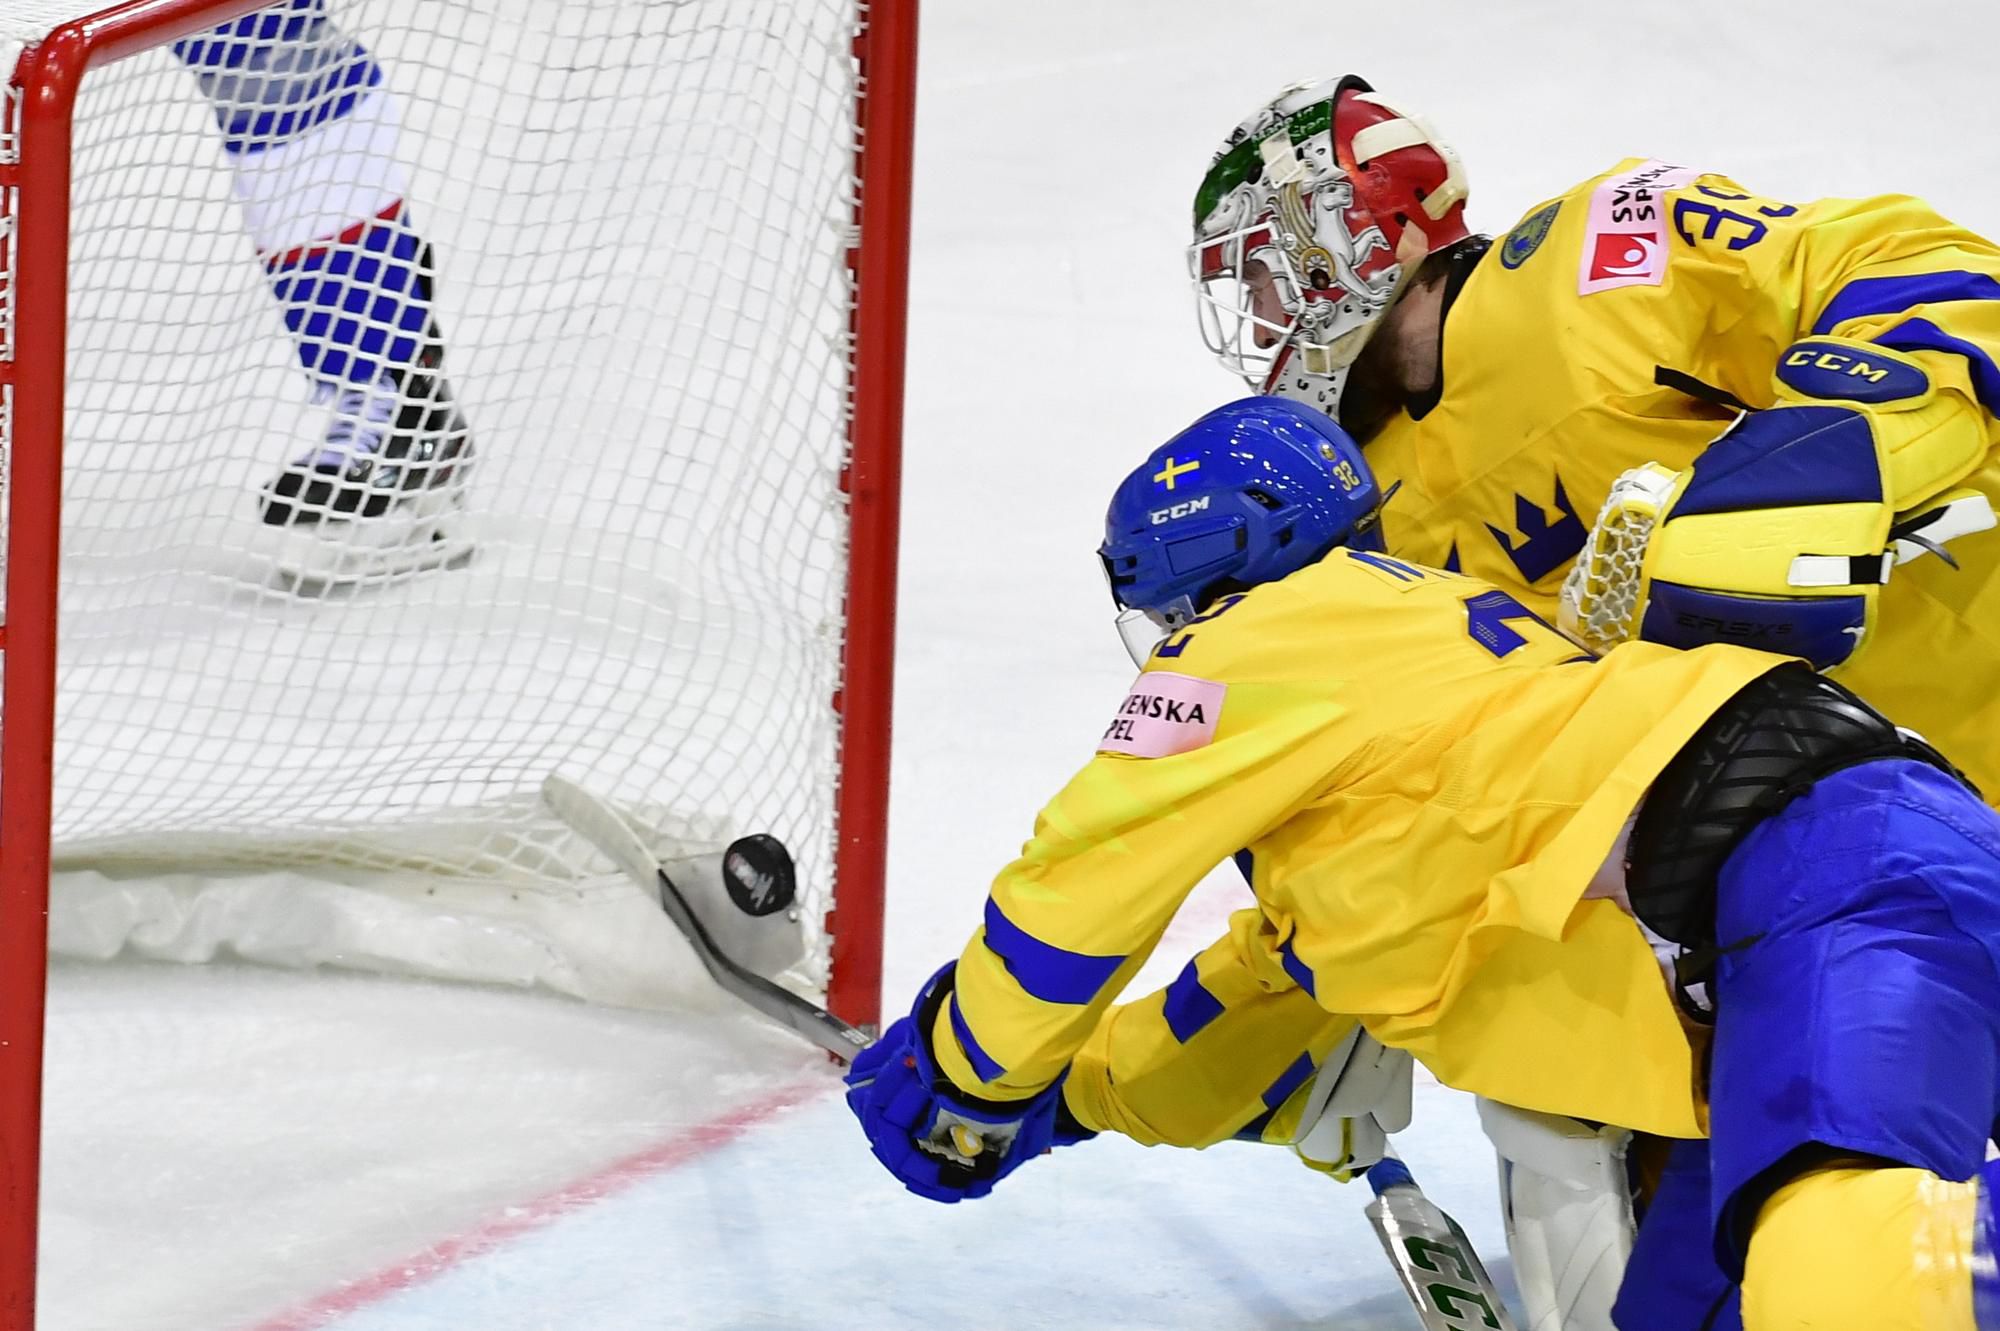 MS v hokeji 2021: Švédsko - Slovensko (Magnus Nygren sa snaží zabrániť gólu Petra Cehlárika)